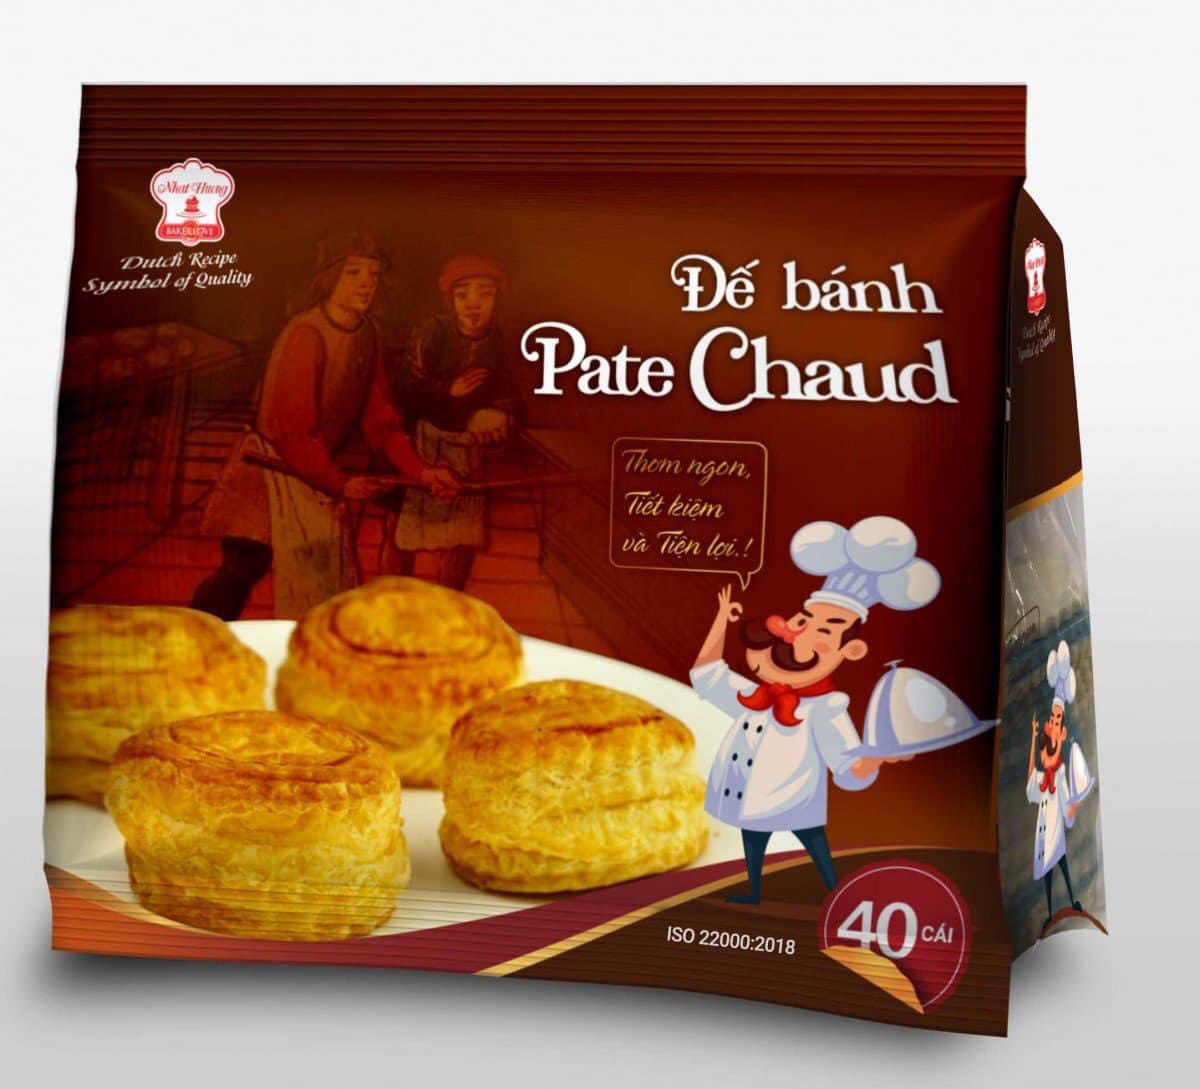 CHỈ GIAO NHANH 2H NỘI THÀNH TPHCM  Đế bánh Pateso  bánh Chaud  túi 40